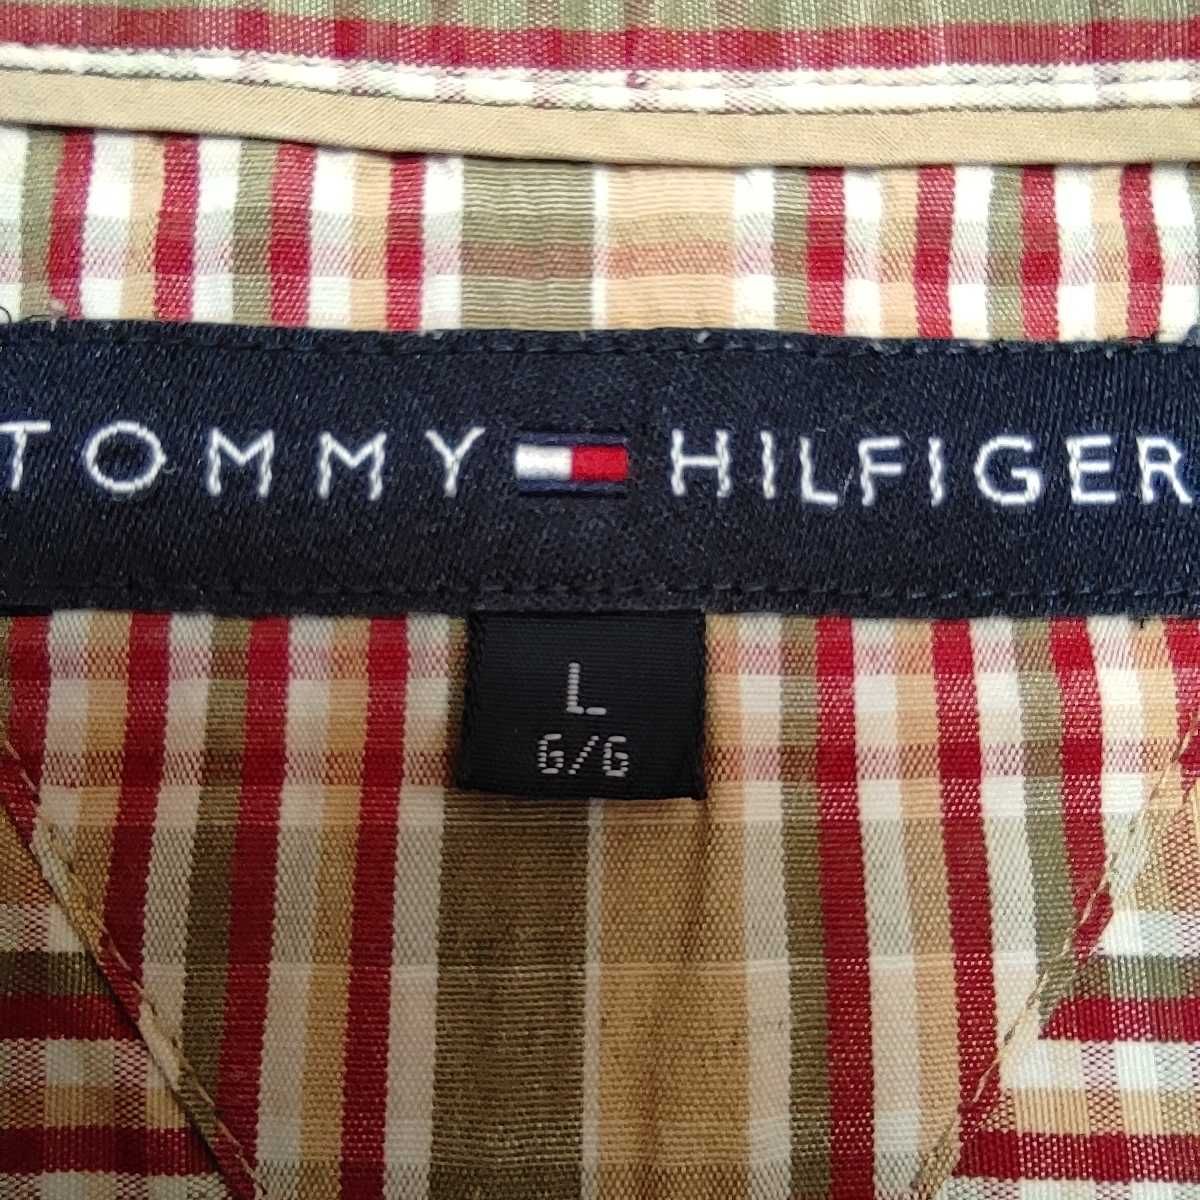 Koszula męska TOMMY HILFIGER - rozmiar L - długi rękaw